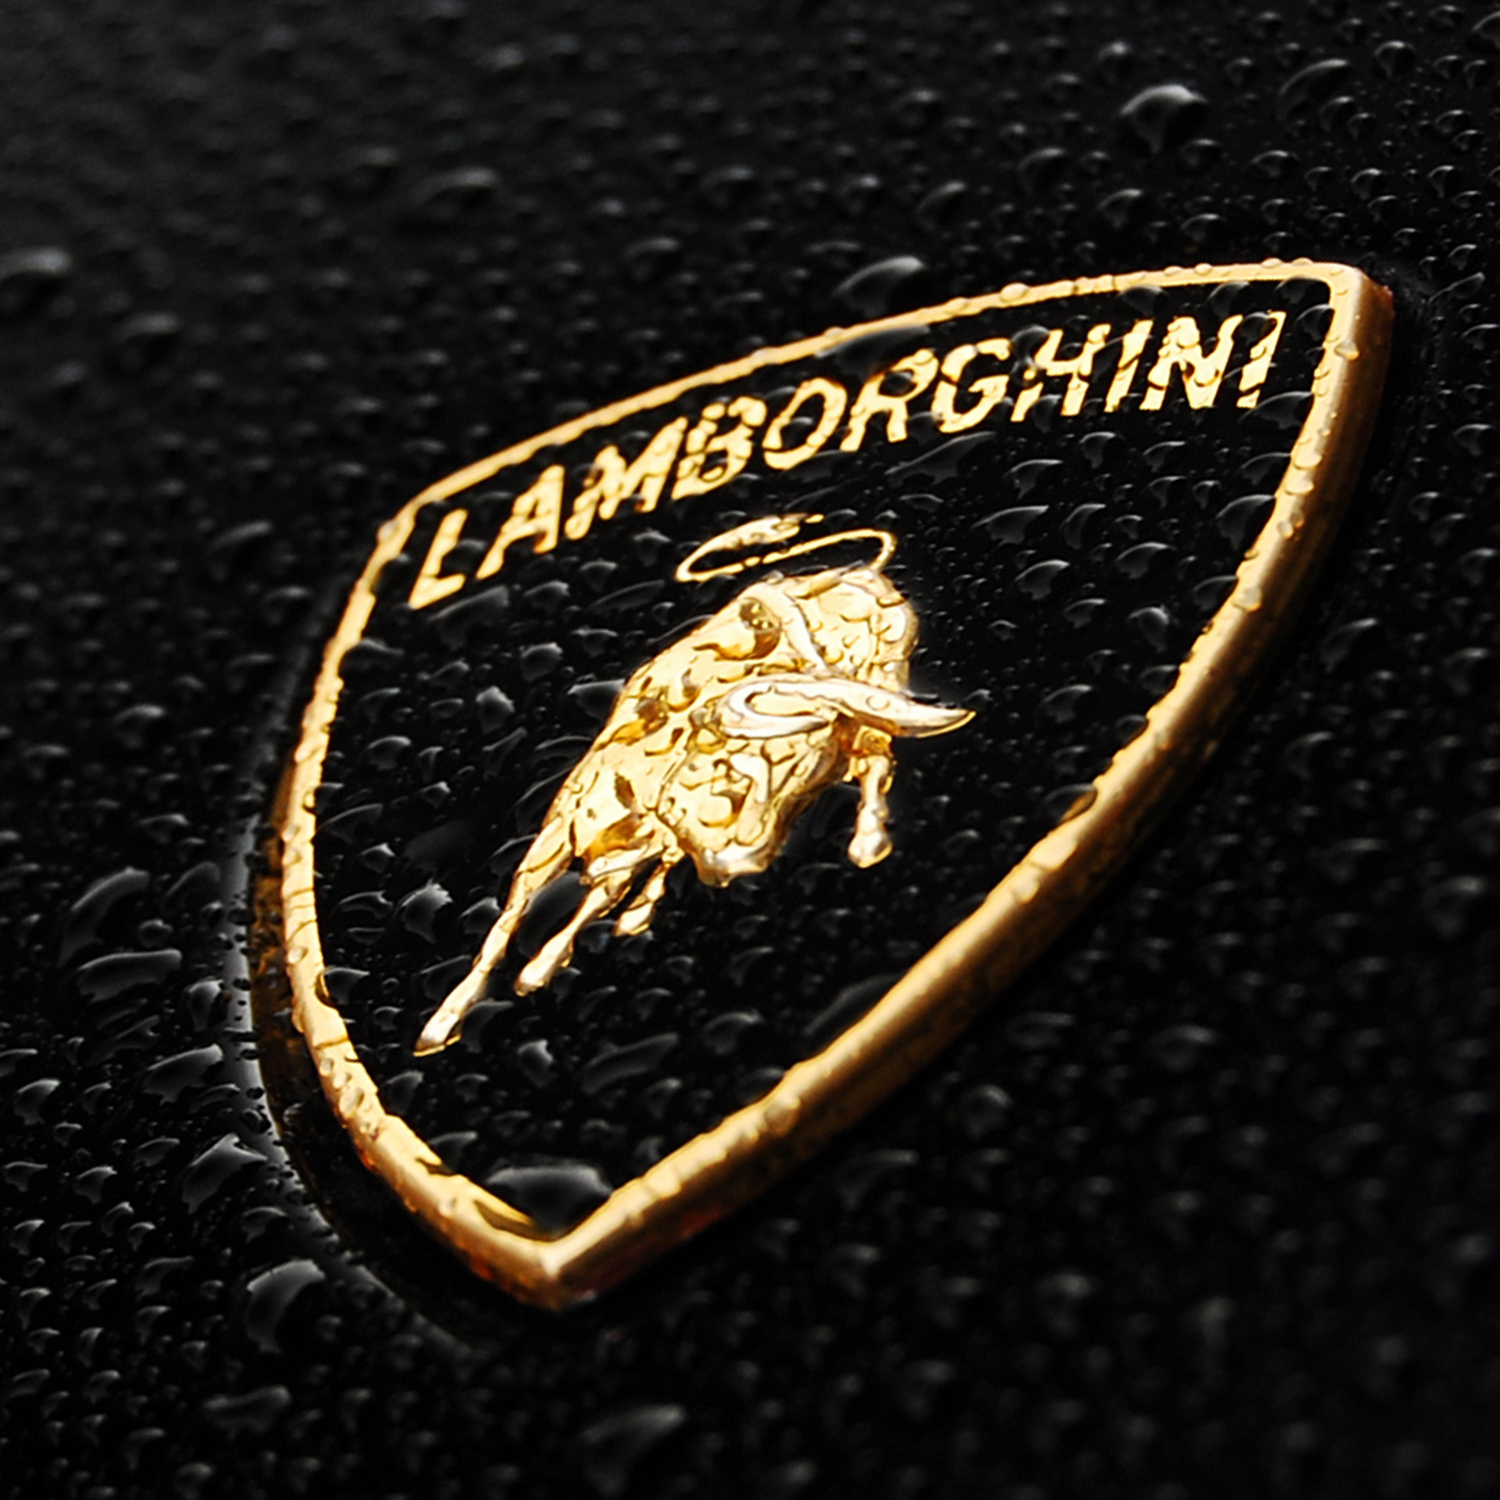 Lamborghini logo car emblem